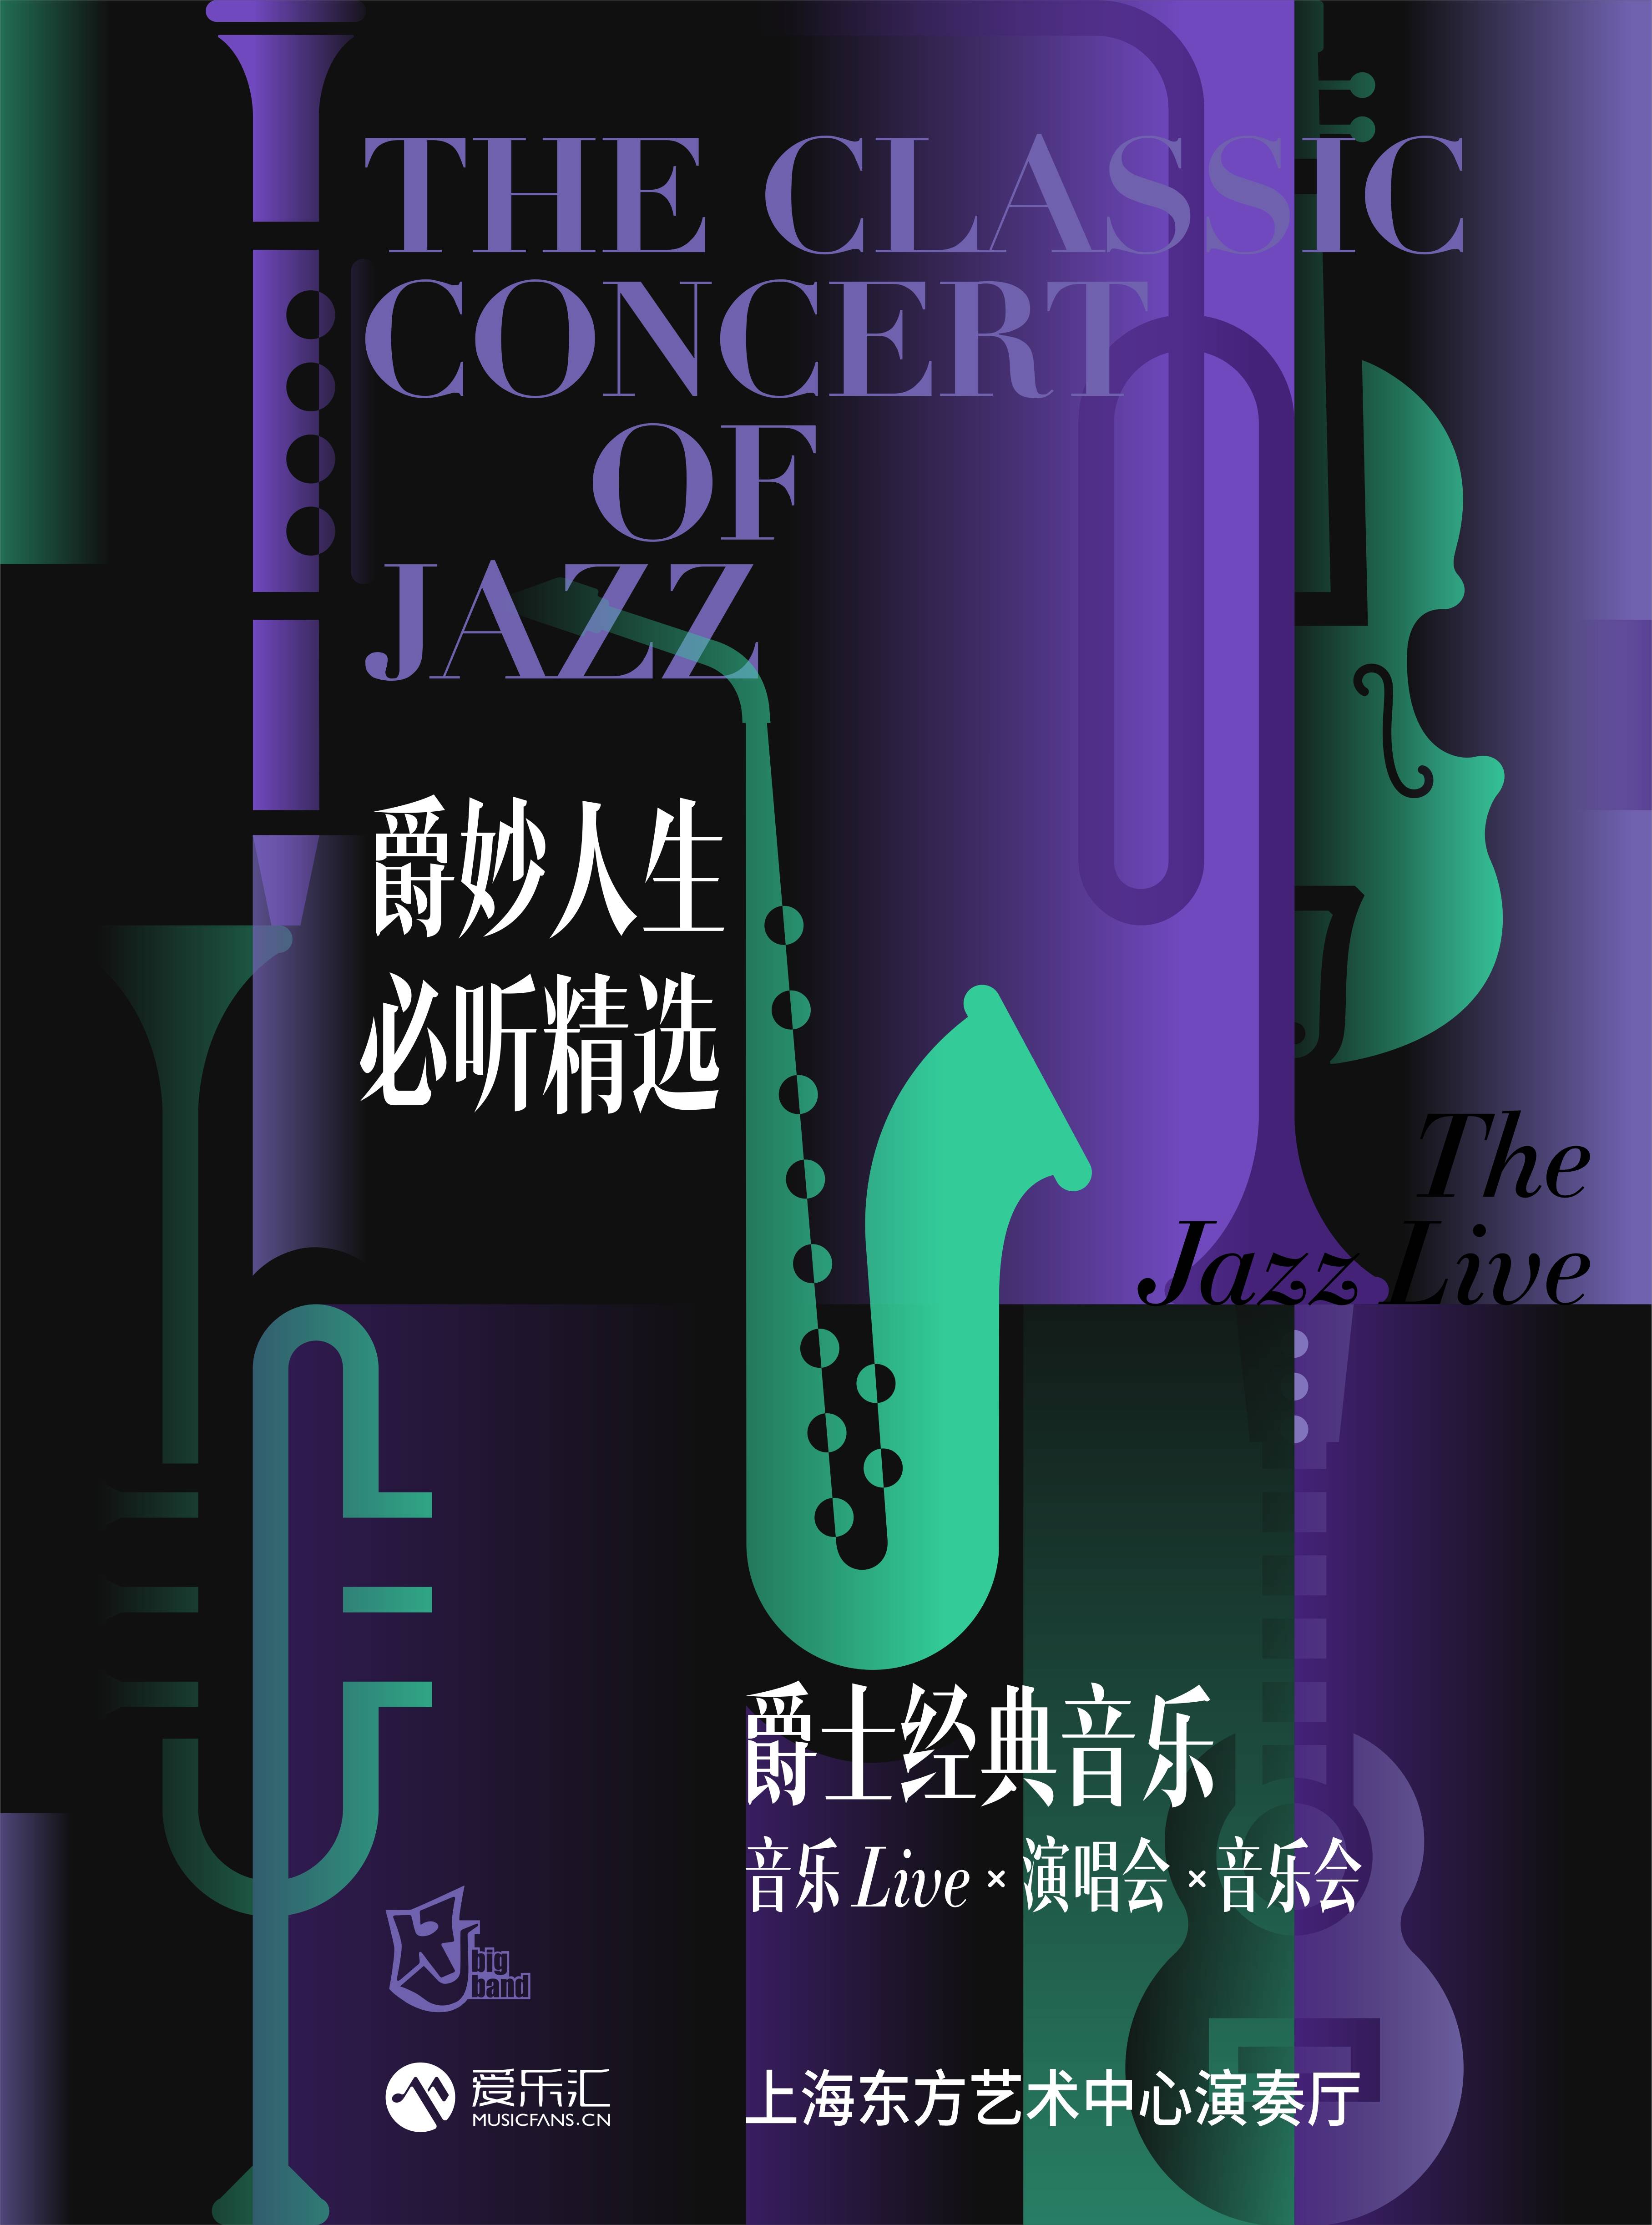 The Classic Concert of Jazz - Men in Jazz